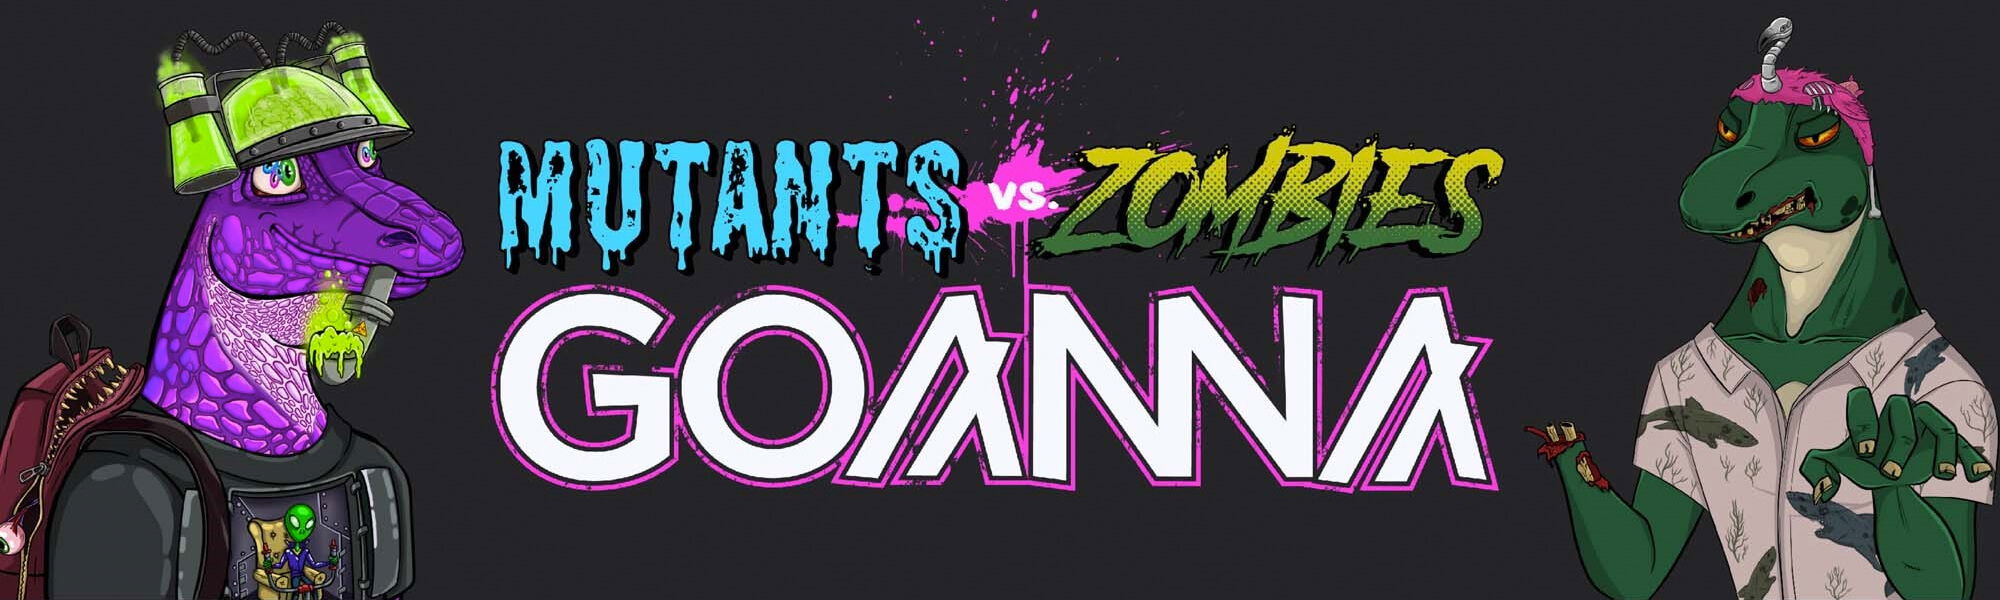 Mutants Vs Zombies banner